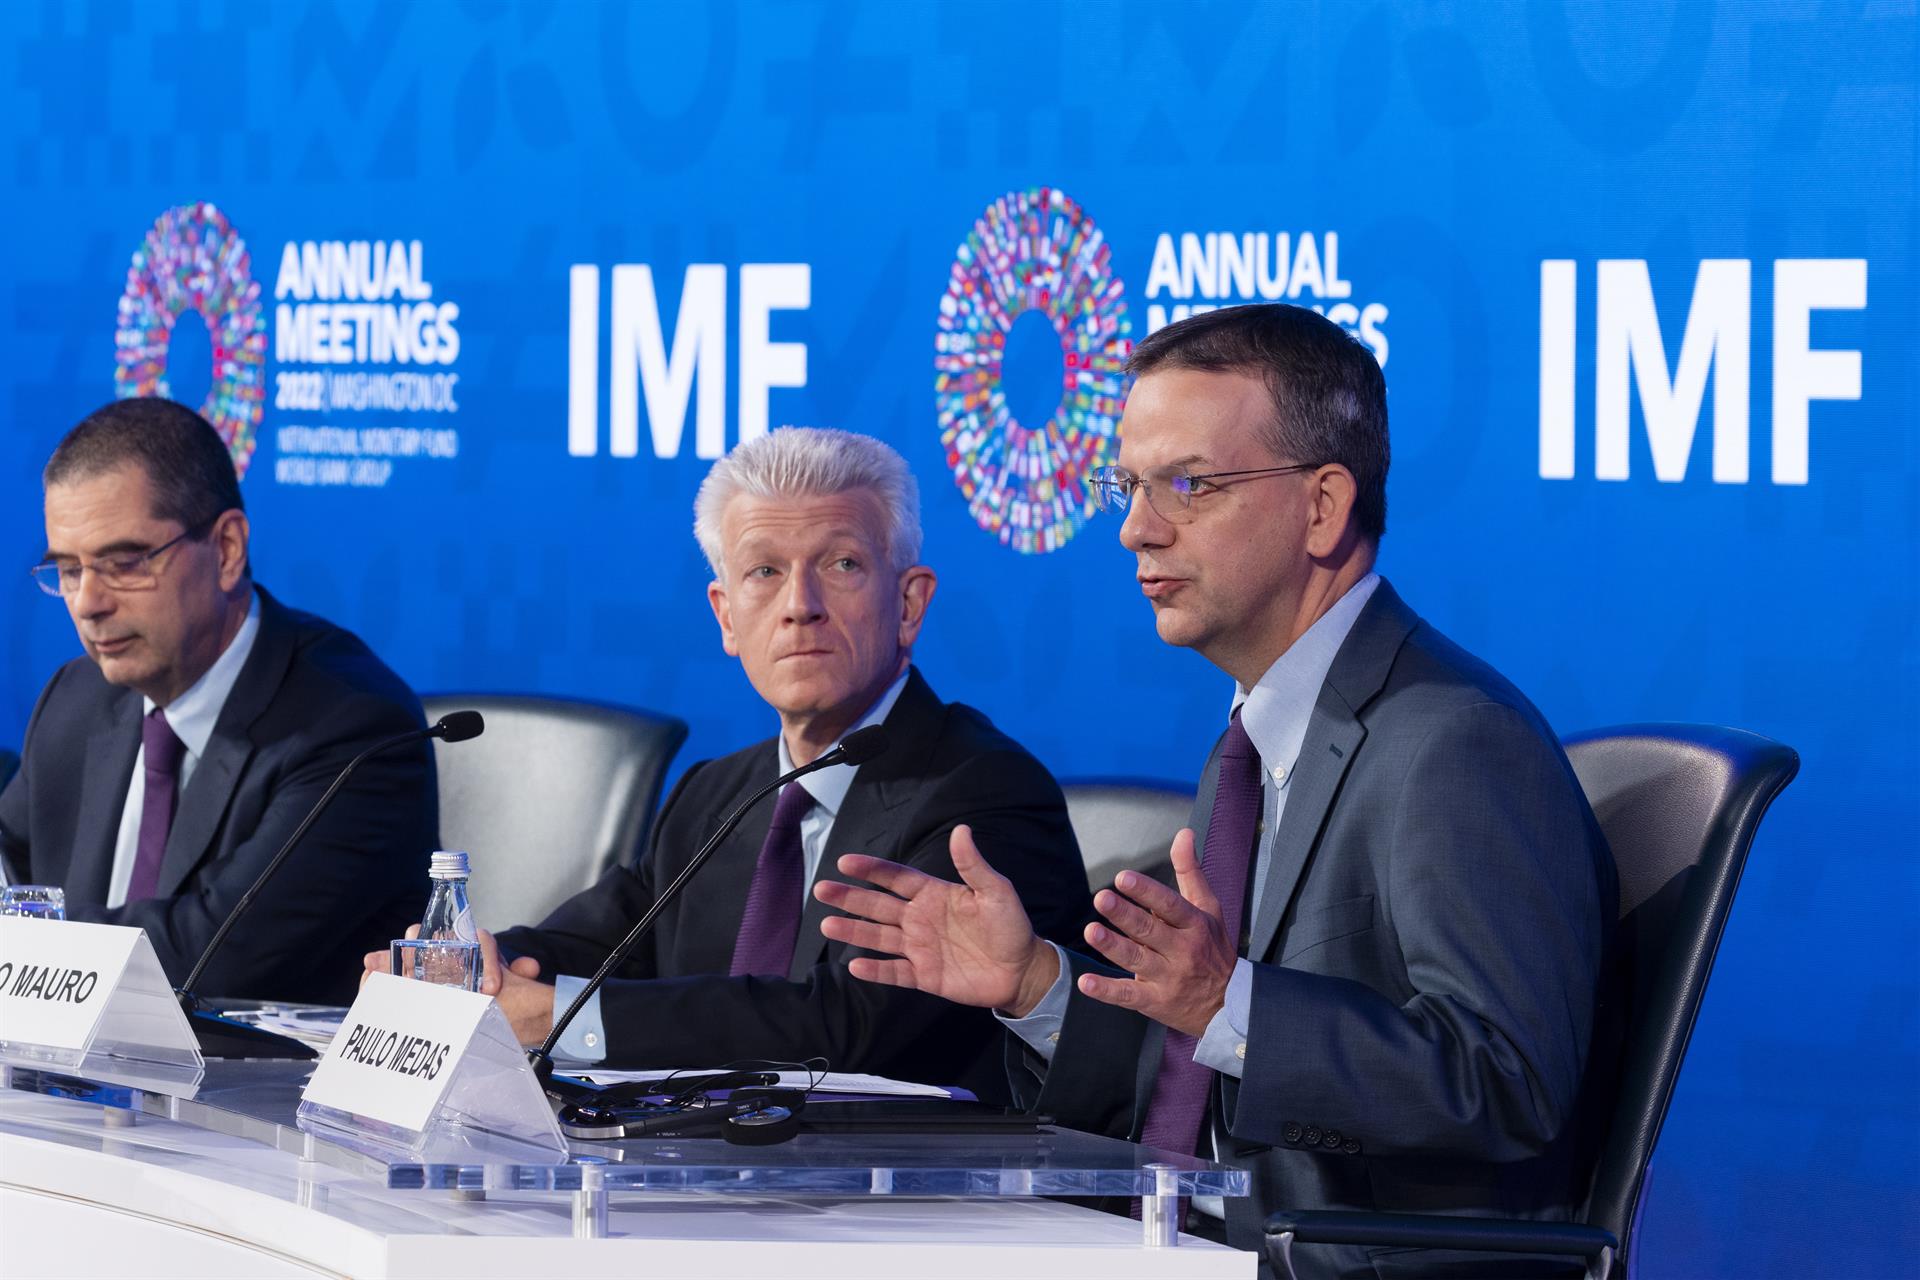 El FMI prevé un aumento continuado de la deuda pública de las grandes economías